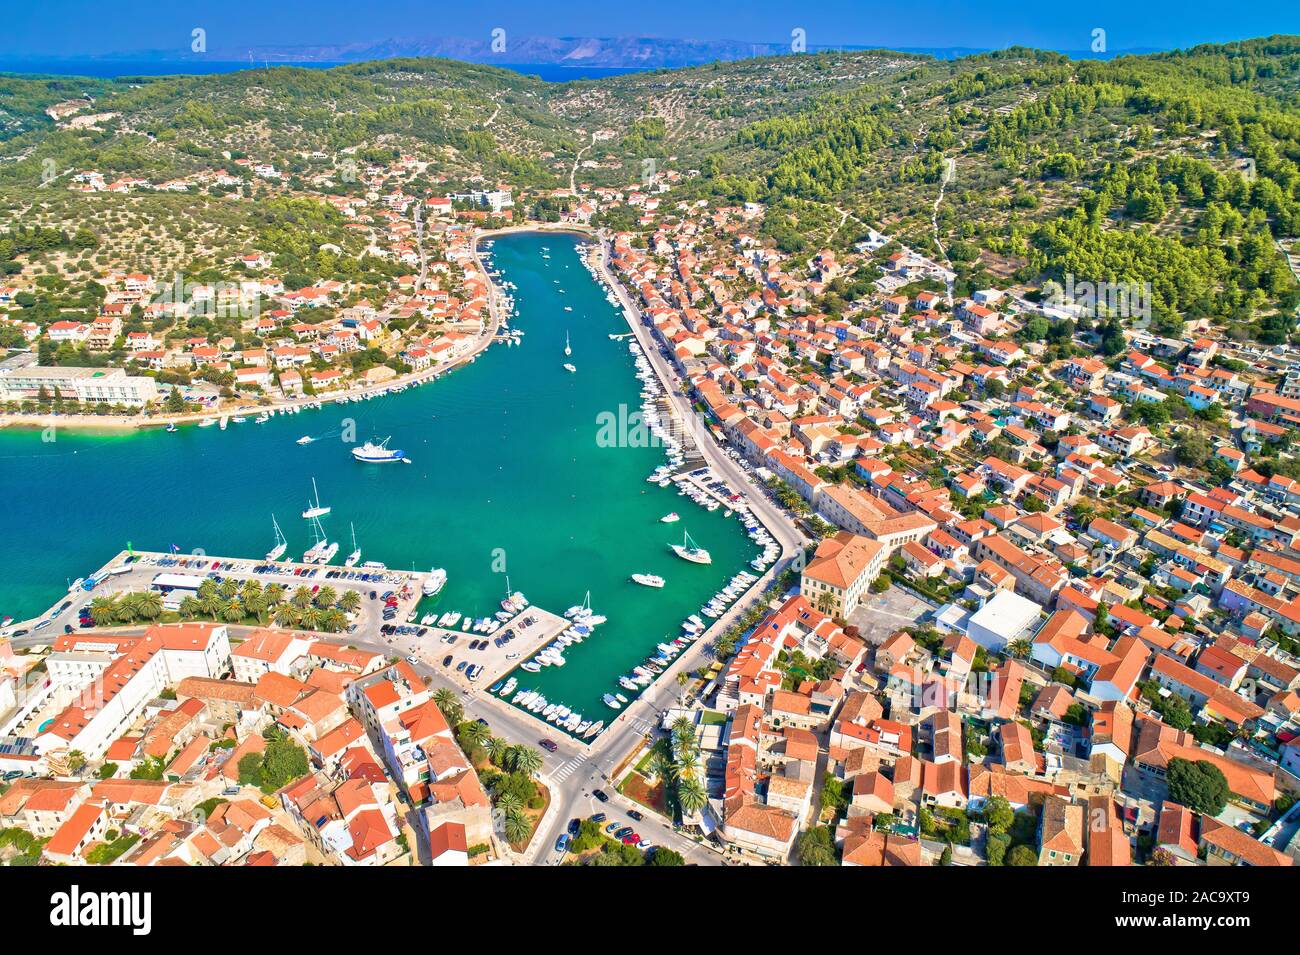 La bahía de Vela Luka en la isla de Korcula vista aérea, archipiélago del  sur de Dalmacia, Croacia Fotografía de stock - Alamy